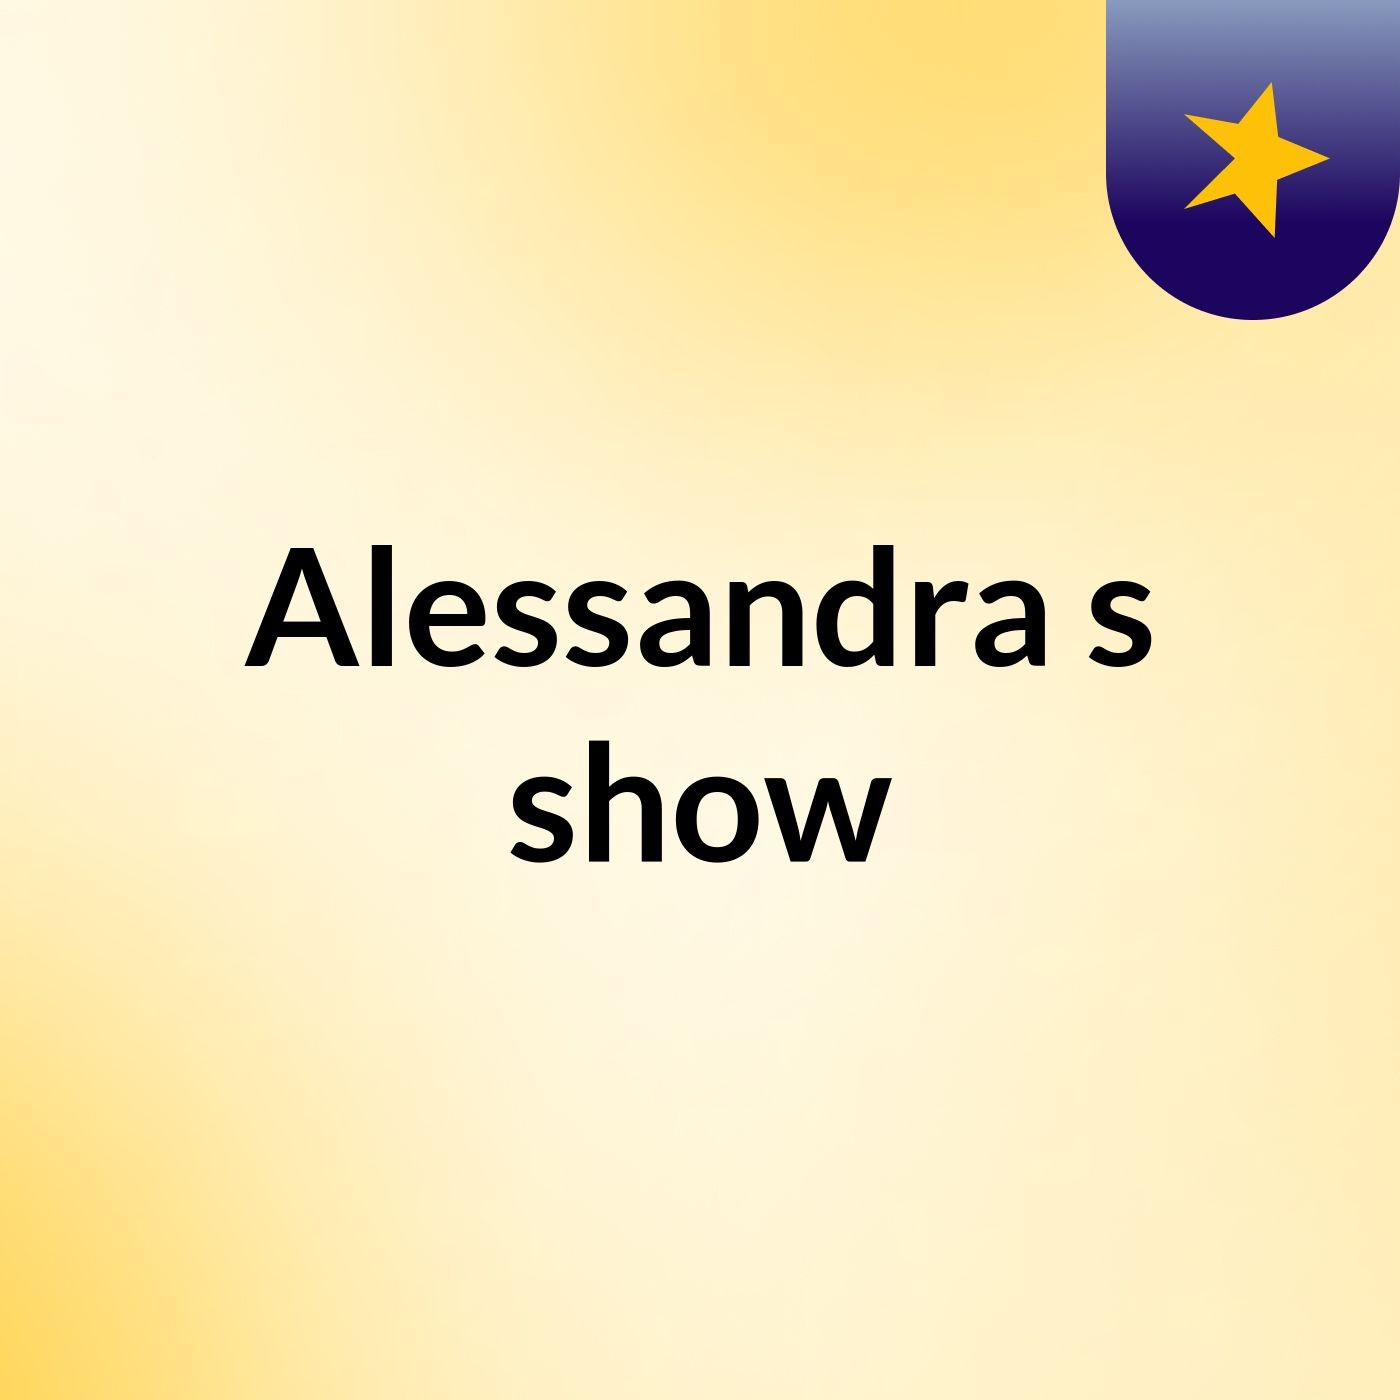 Alessandra's show